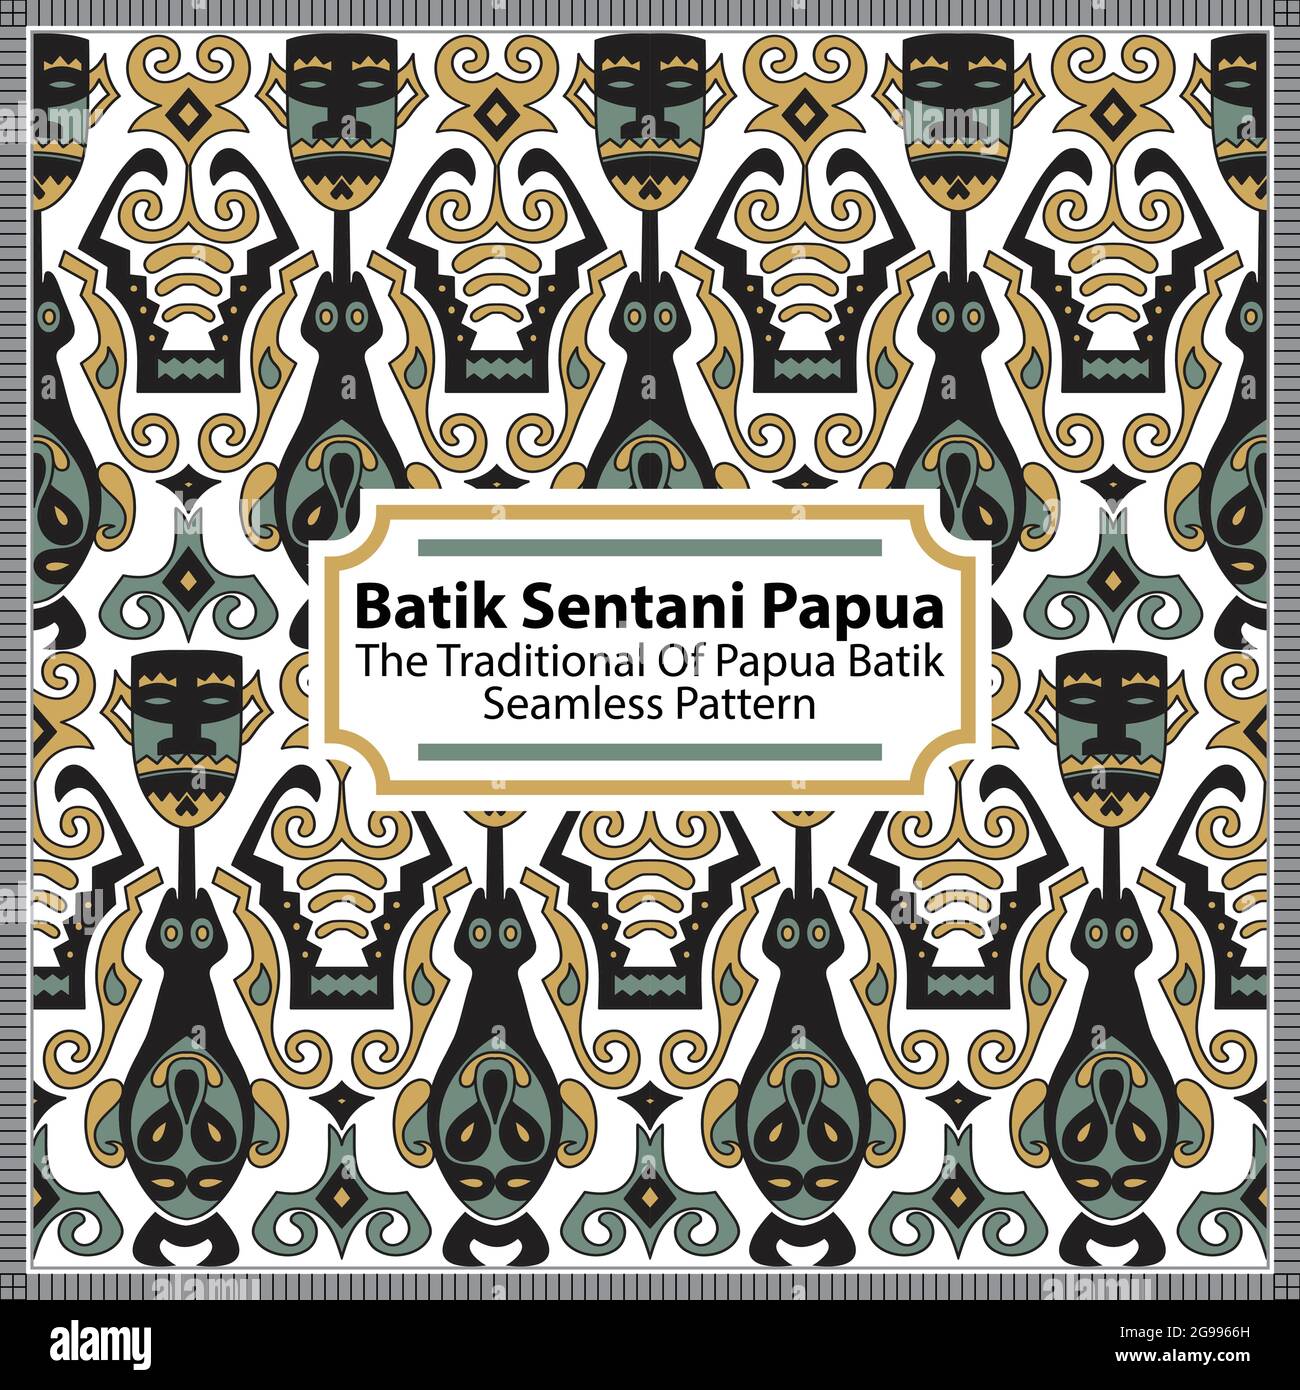 Das Batik-Motiv von Sentani ist ein Batik-Motiv, das aus dem Bezirk Sentani, Jayapura, stammt. Batik-Motive weisen im Allgemeinen kreisförmige Rillen auf, wie z. B. Baumstämme mit einem Stock Vektor